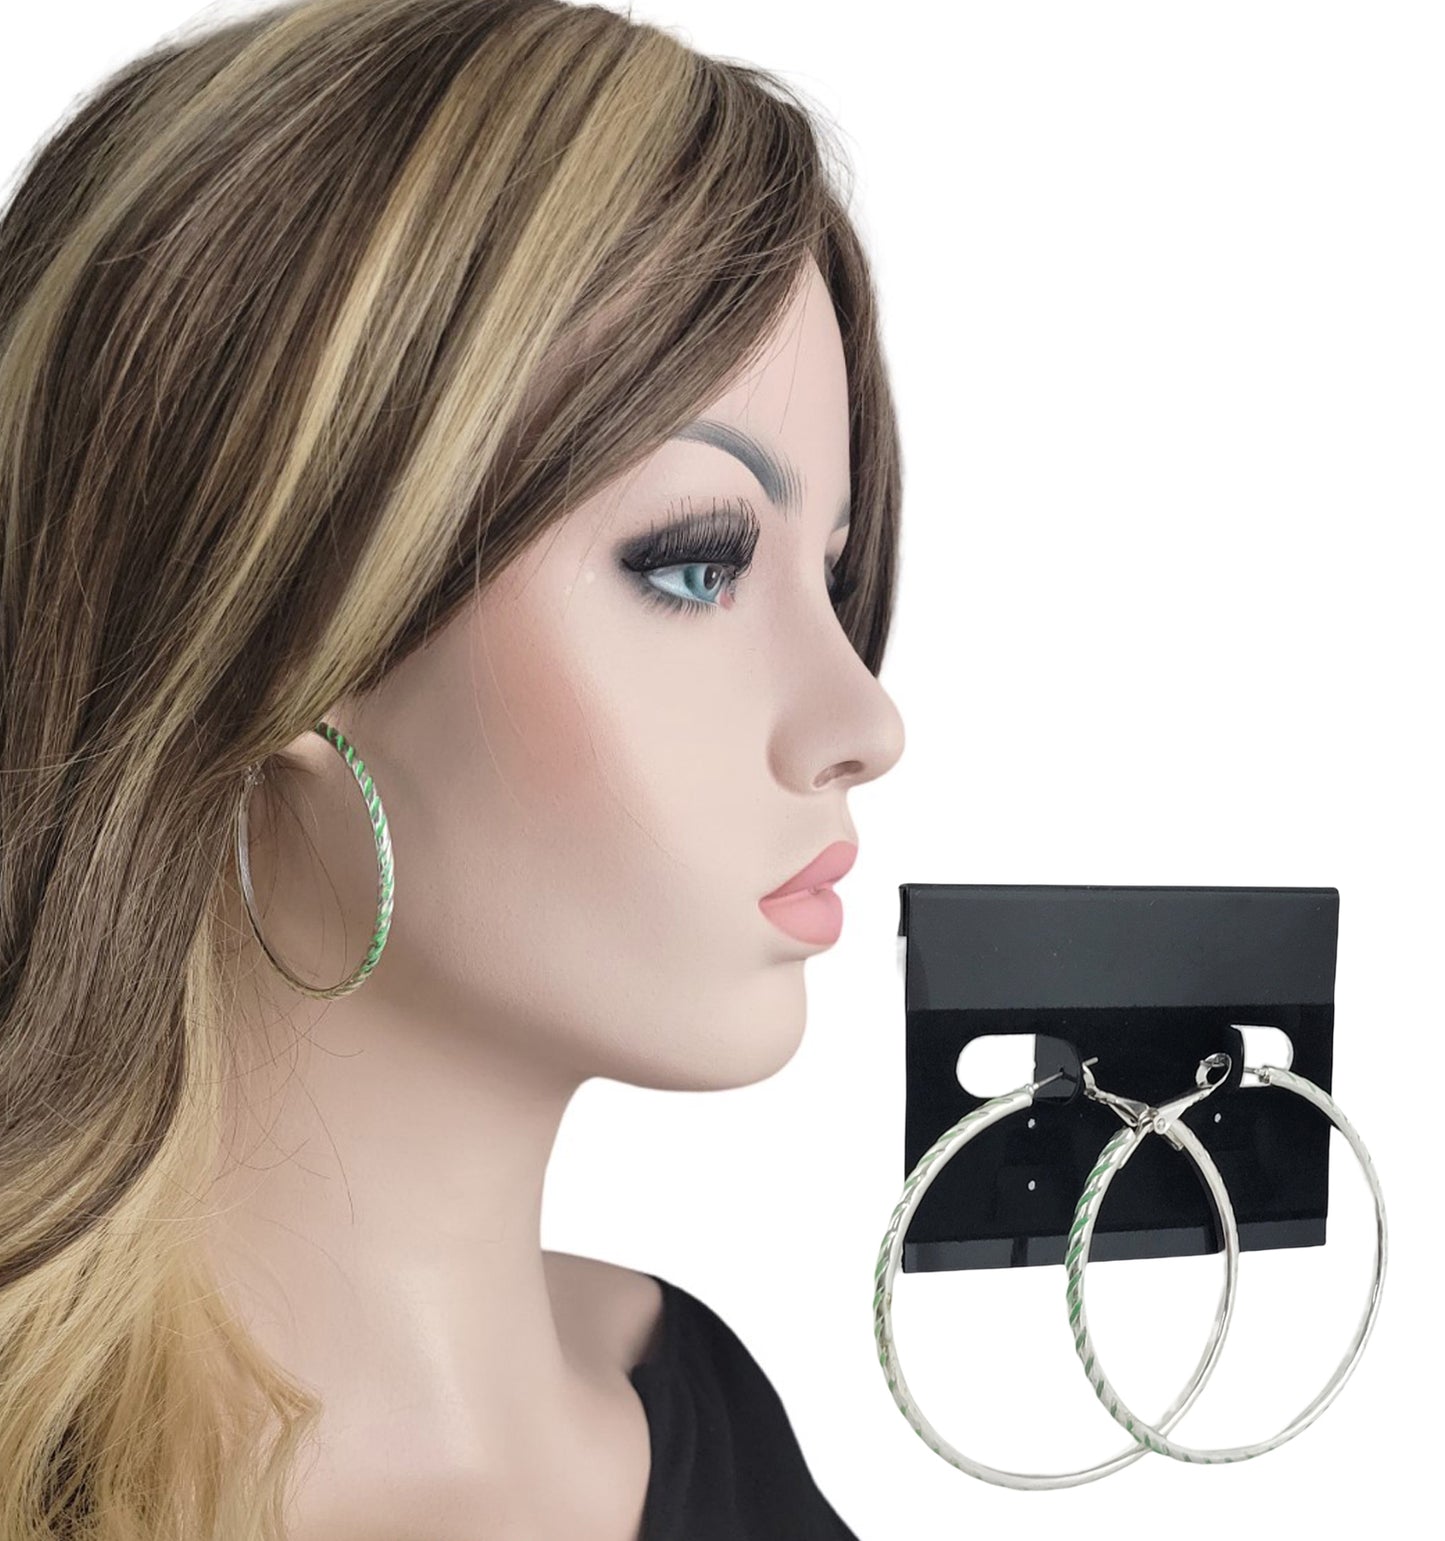 Large Silver Tone Diagonal Stripe Pierced Earrings 2 1/4" - Green